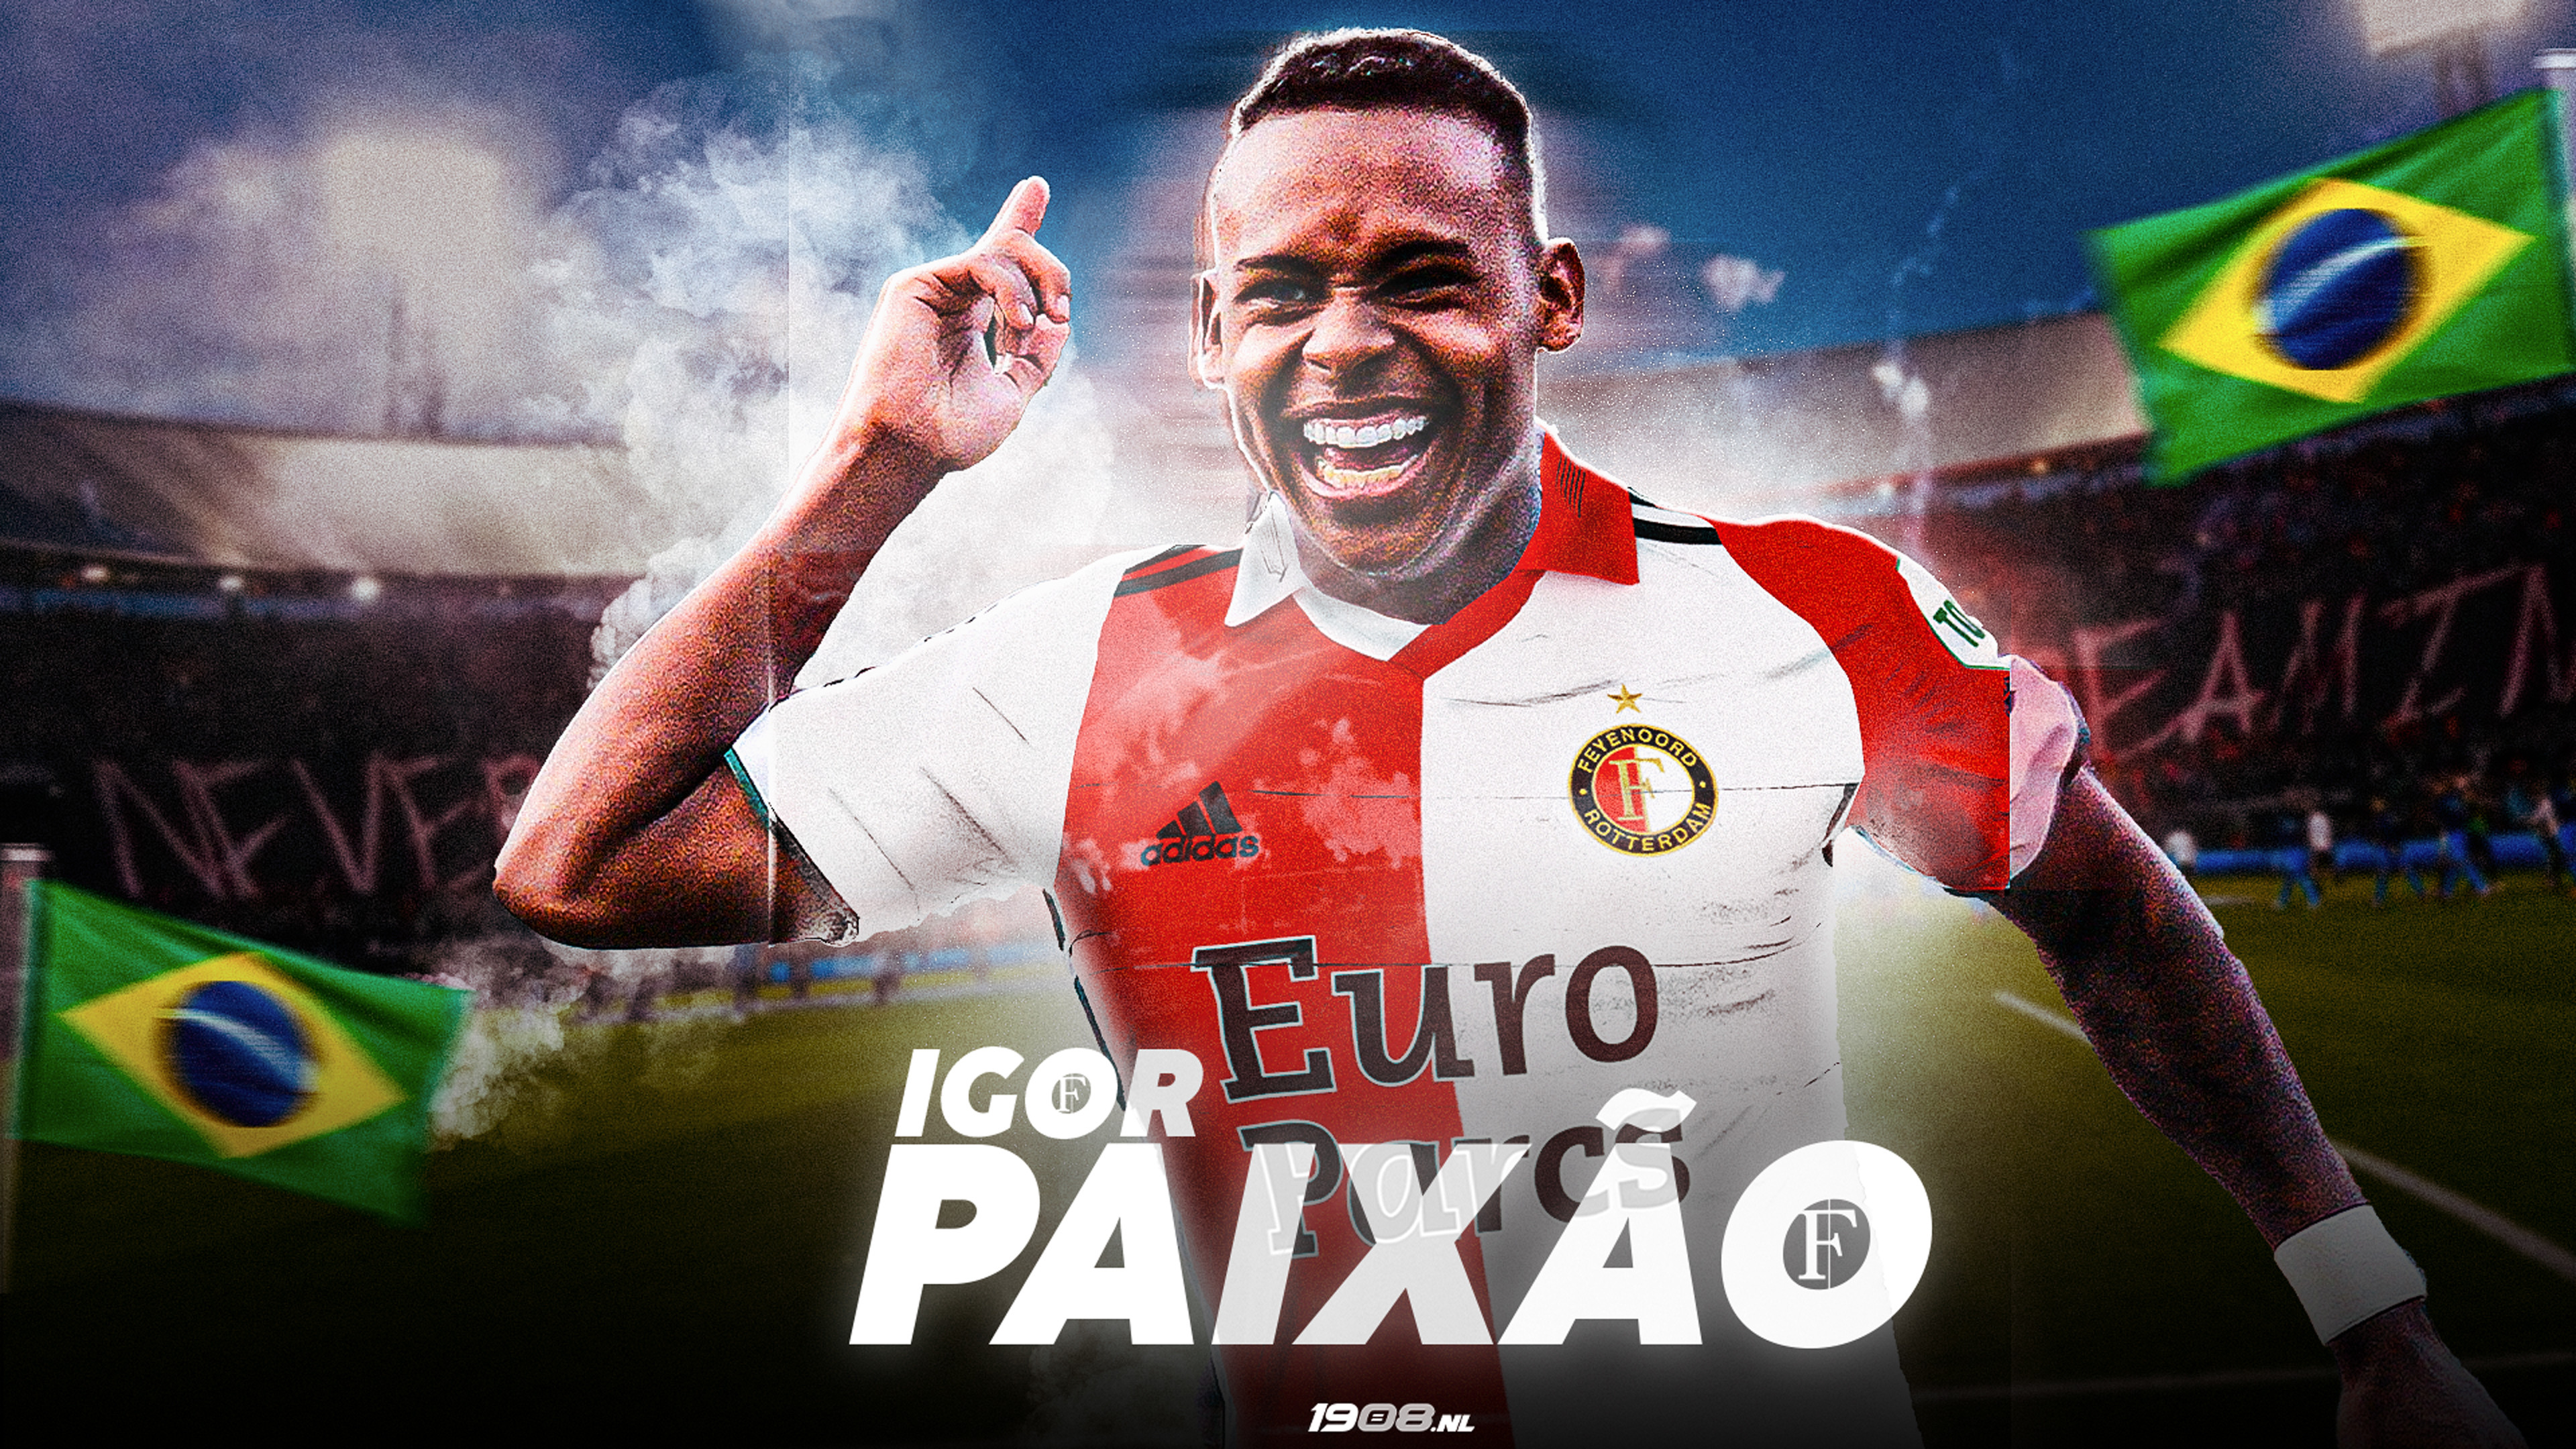 Igor Paixão kon ook naar FC Porto en SL Benfica